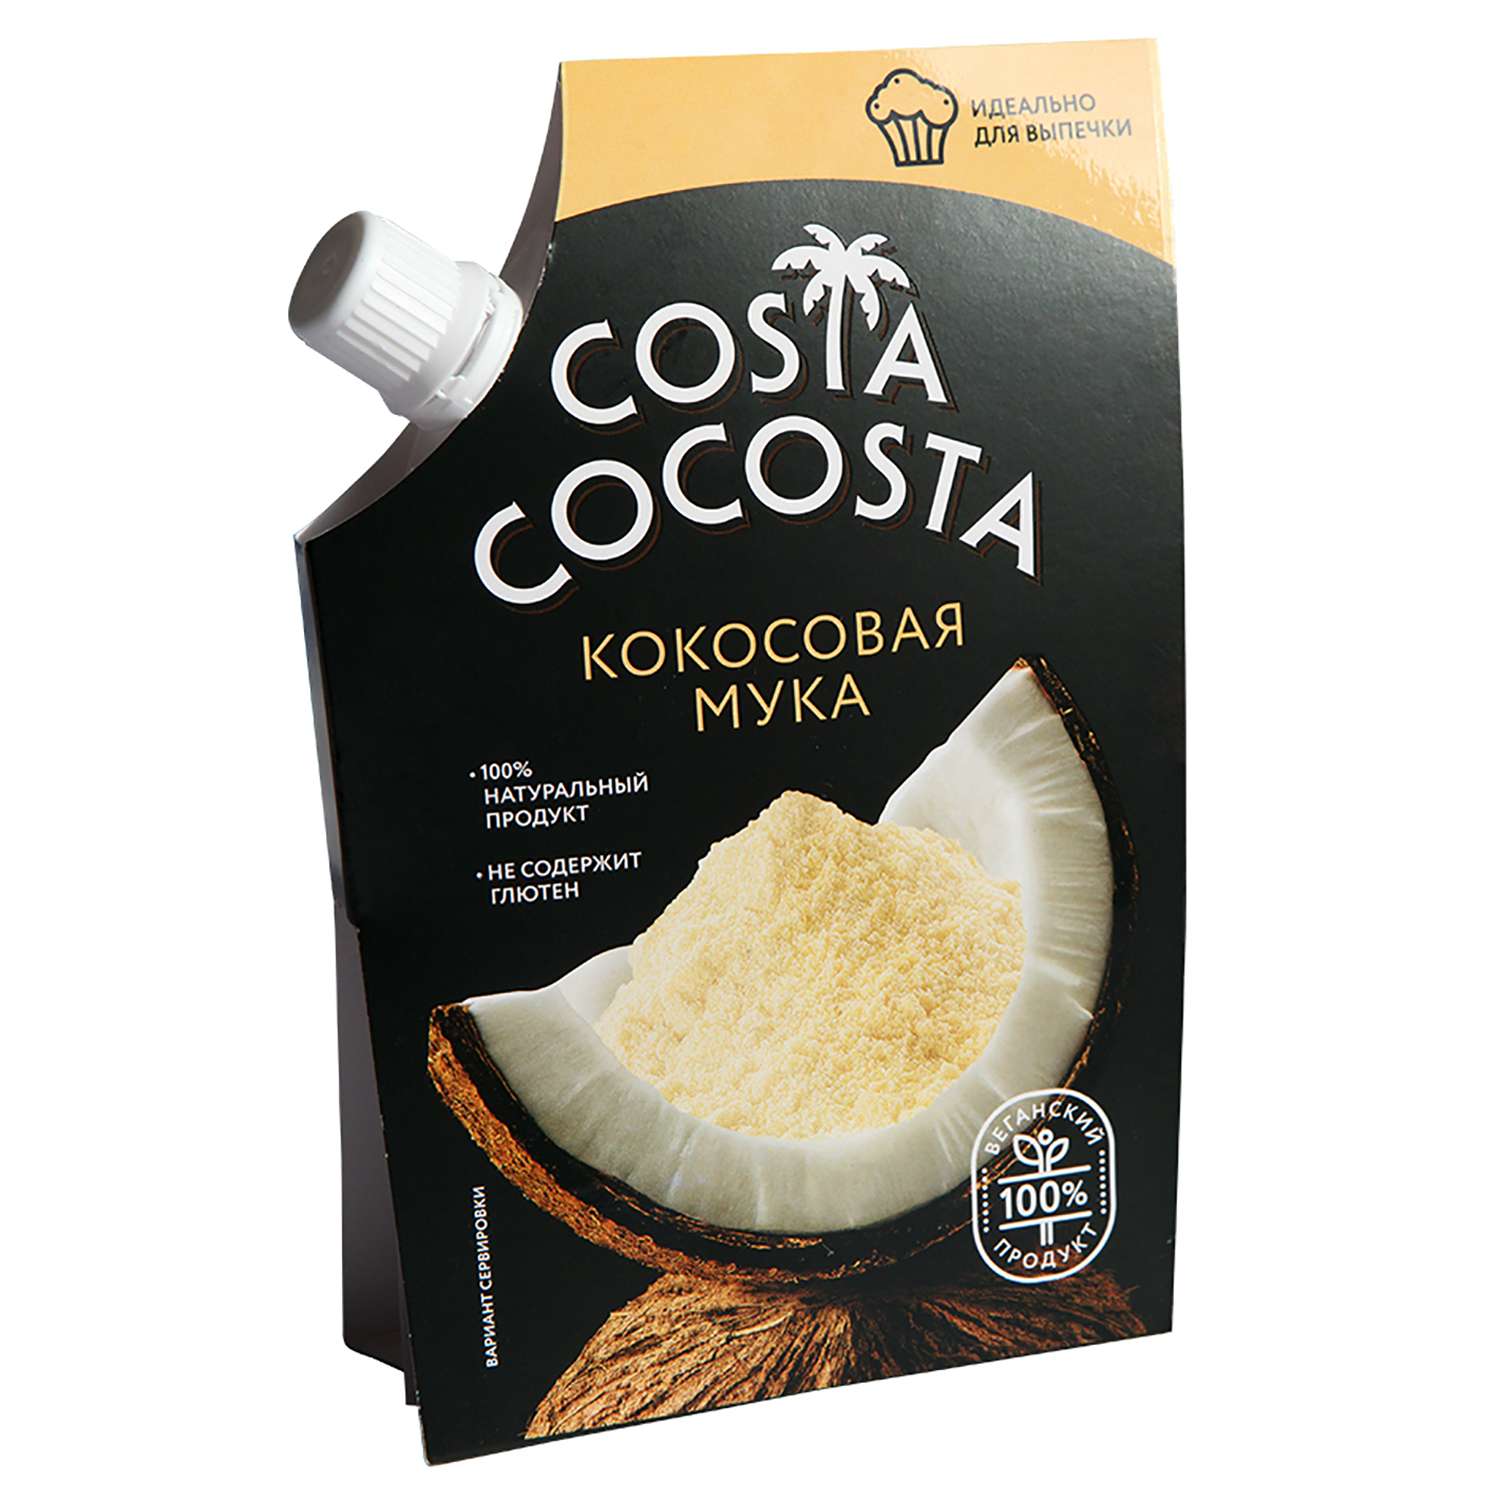 Мука Costa Cocosta кокосовая 100г - фото 1